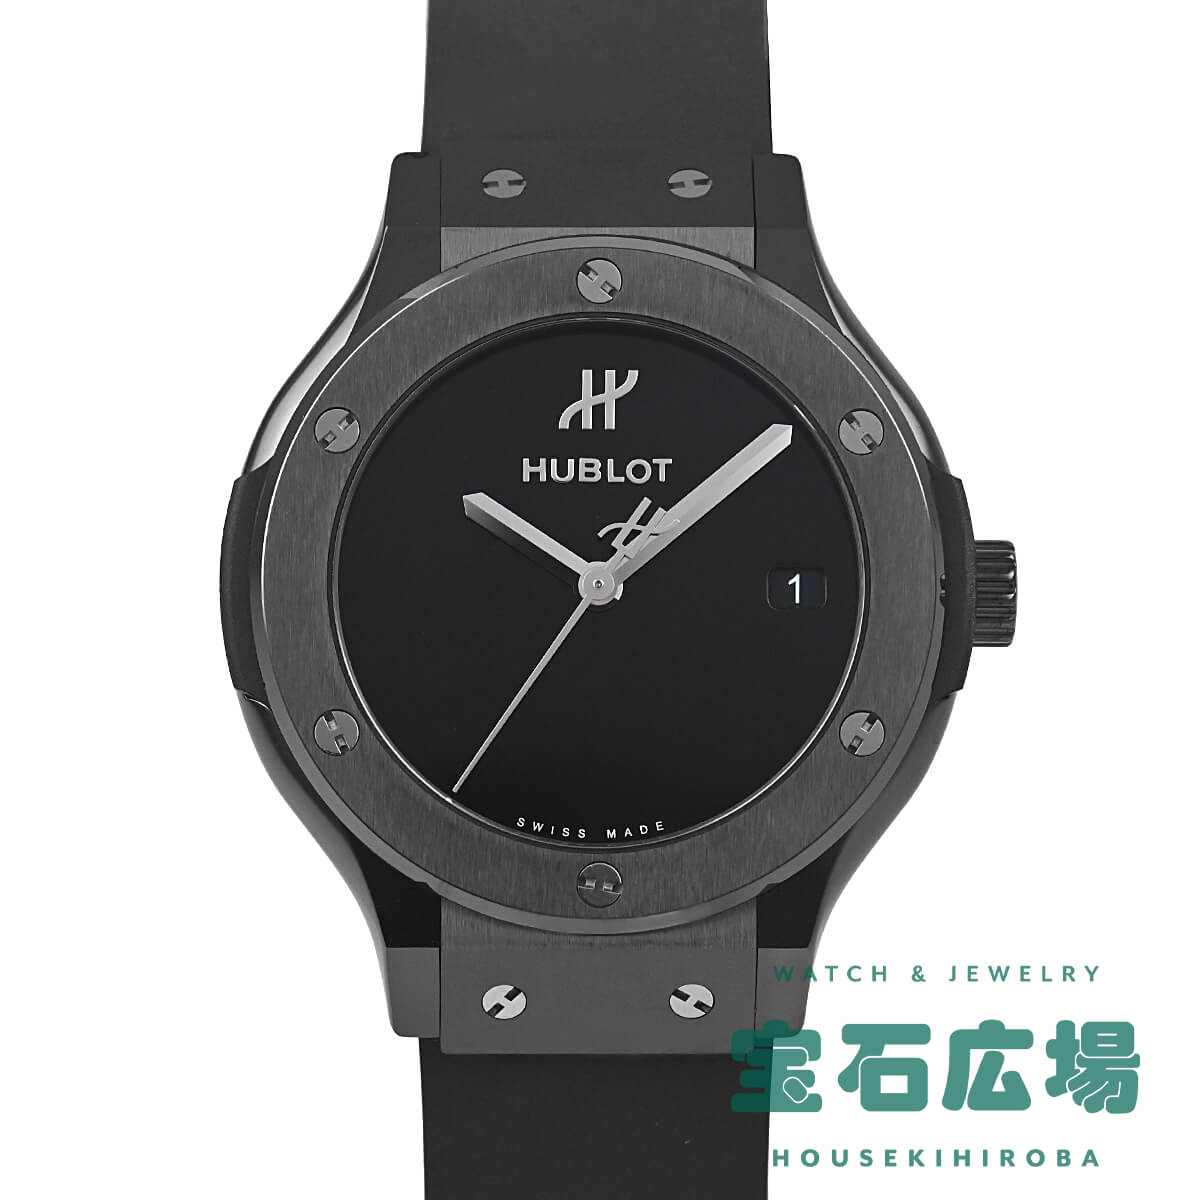 ウブロ HUBLOT クラシック・フュージョン オリジナルブラックマジック 565.CX.1270.RX.MDM 新品 ユニセックス 腕時計